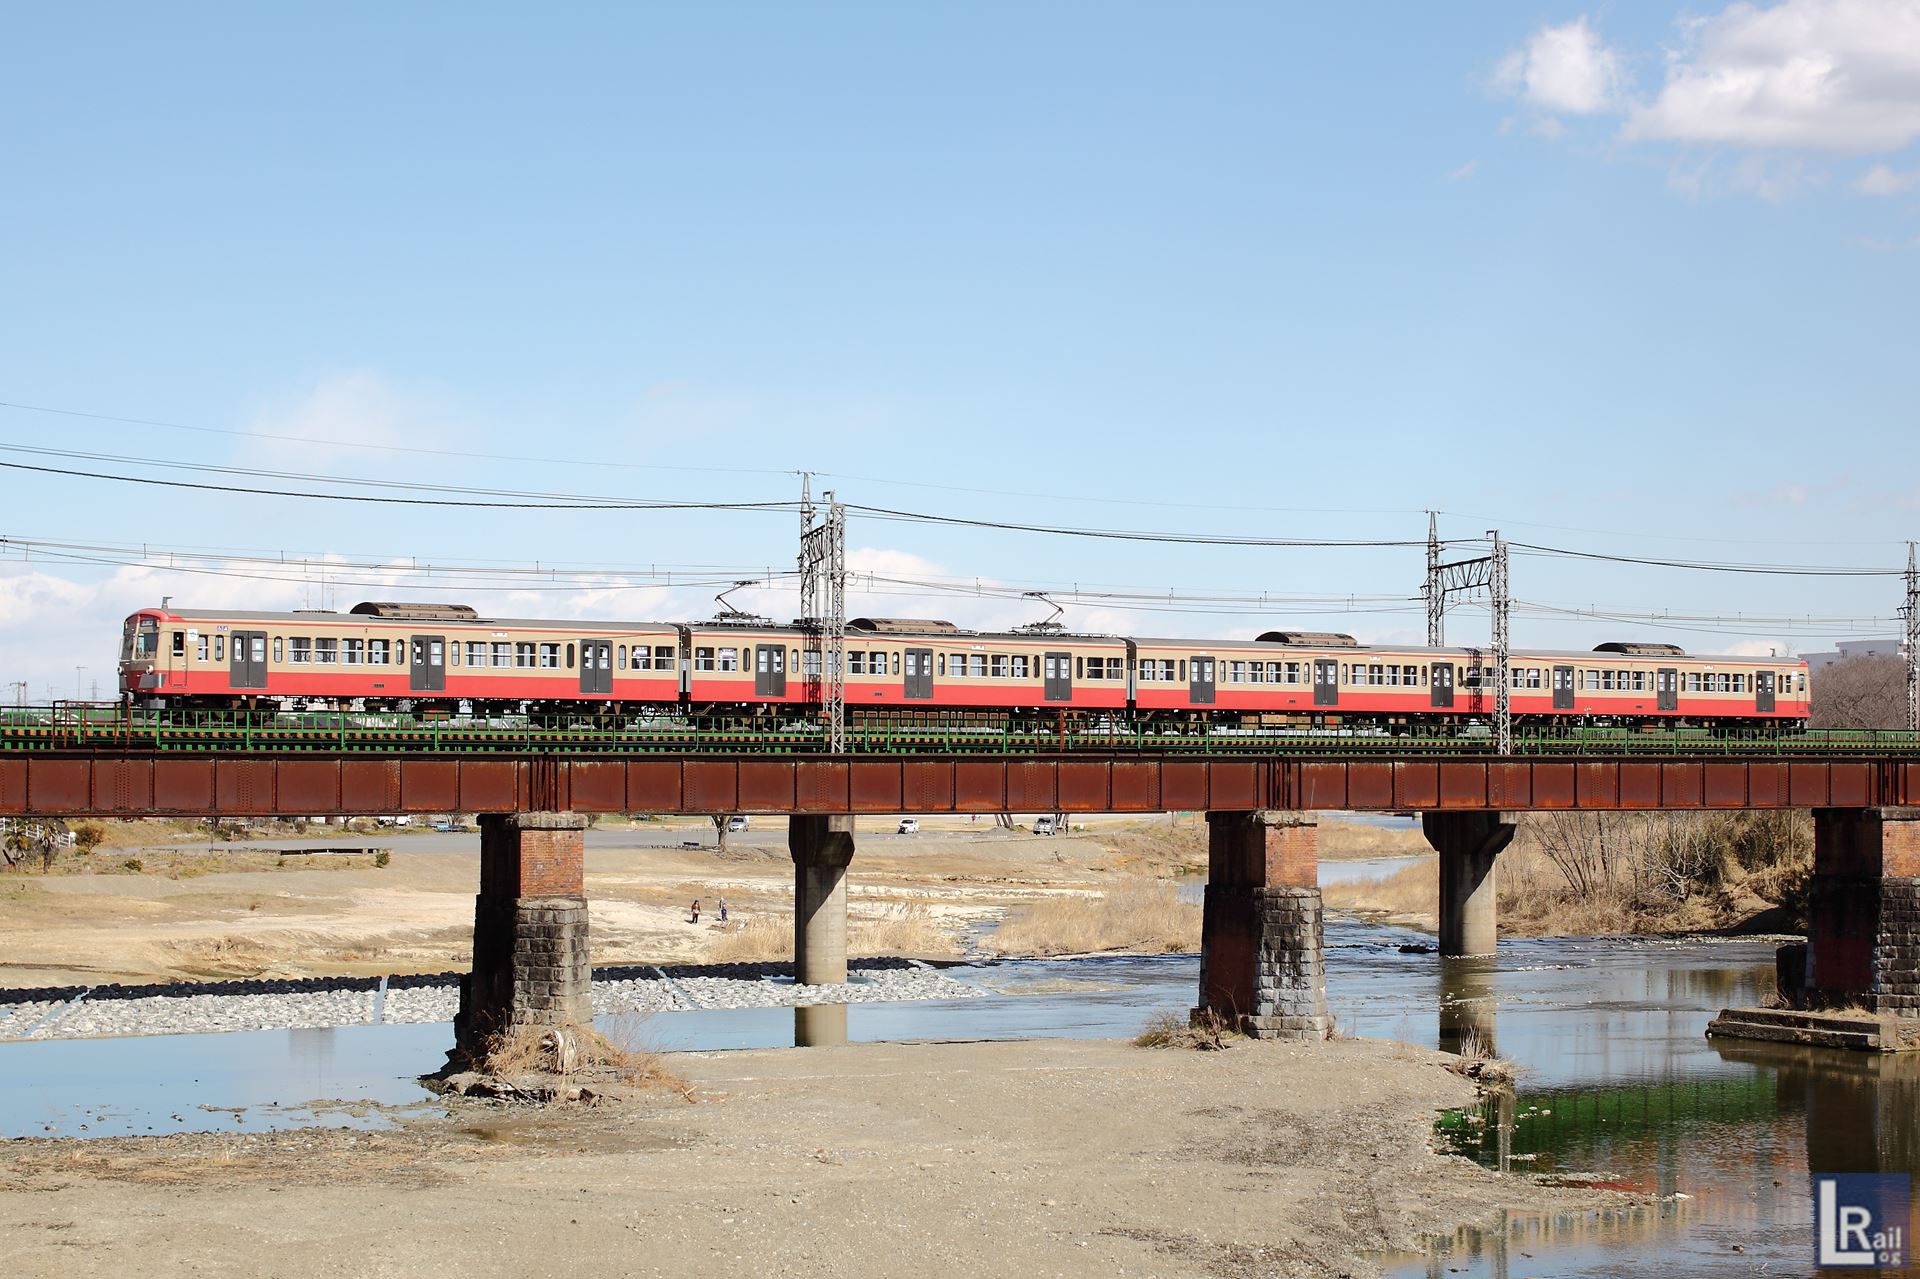 西武新101系赤電259Fが横瀬へ廃車回送される